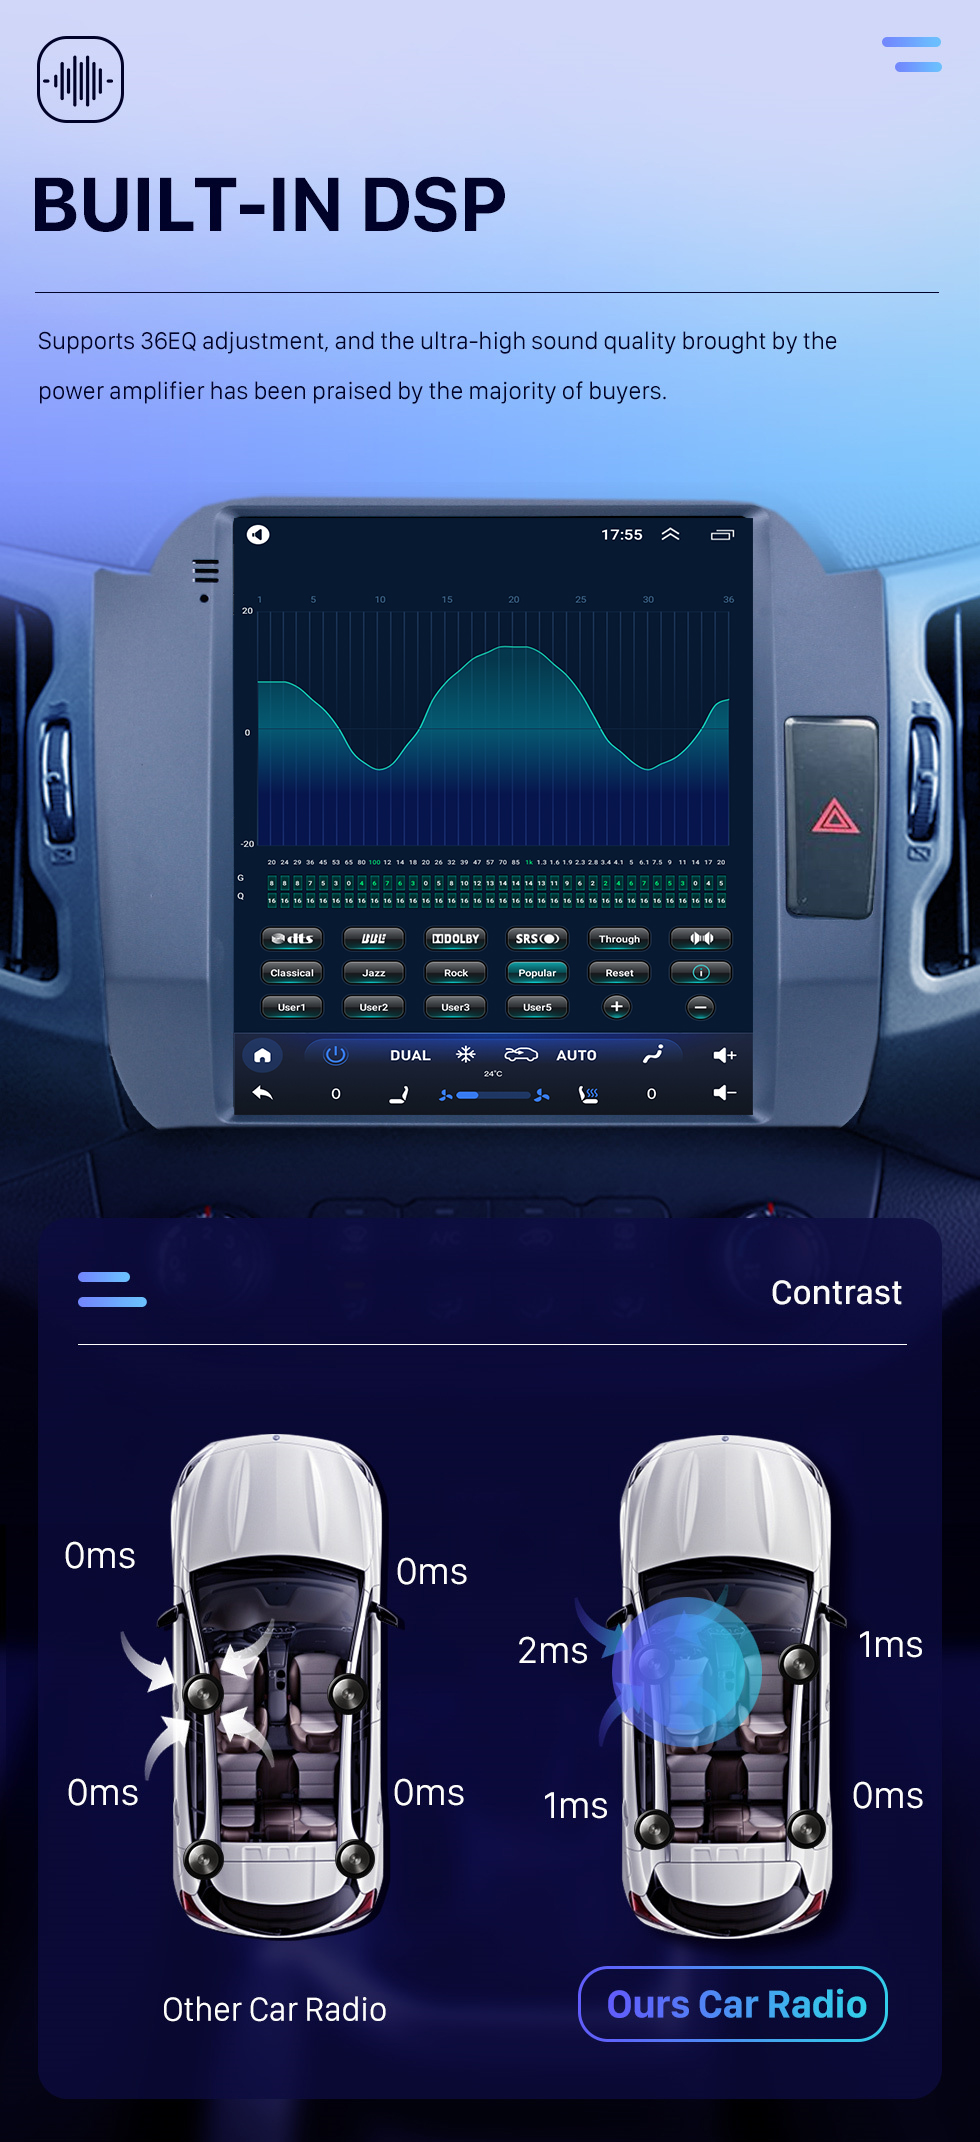 Seicane OEM 9.7 polegadas carro gps rádio hd touchscreen android 10.0 estéreo para 2011-2017 kia sportage r rhd sistema de navegação bluetooth wifi espelho link usb suporte leitor de dvd carplay 4g